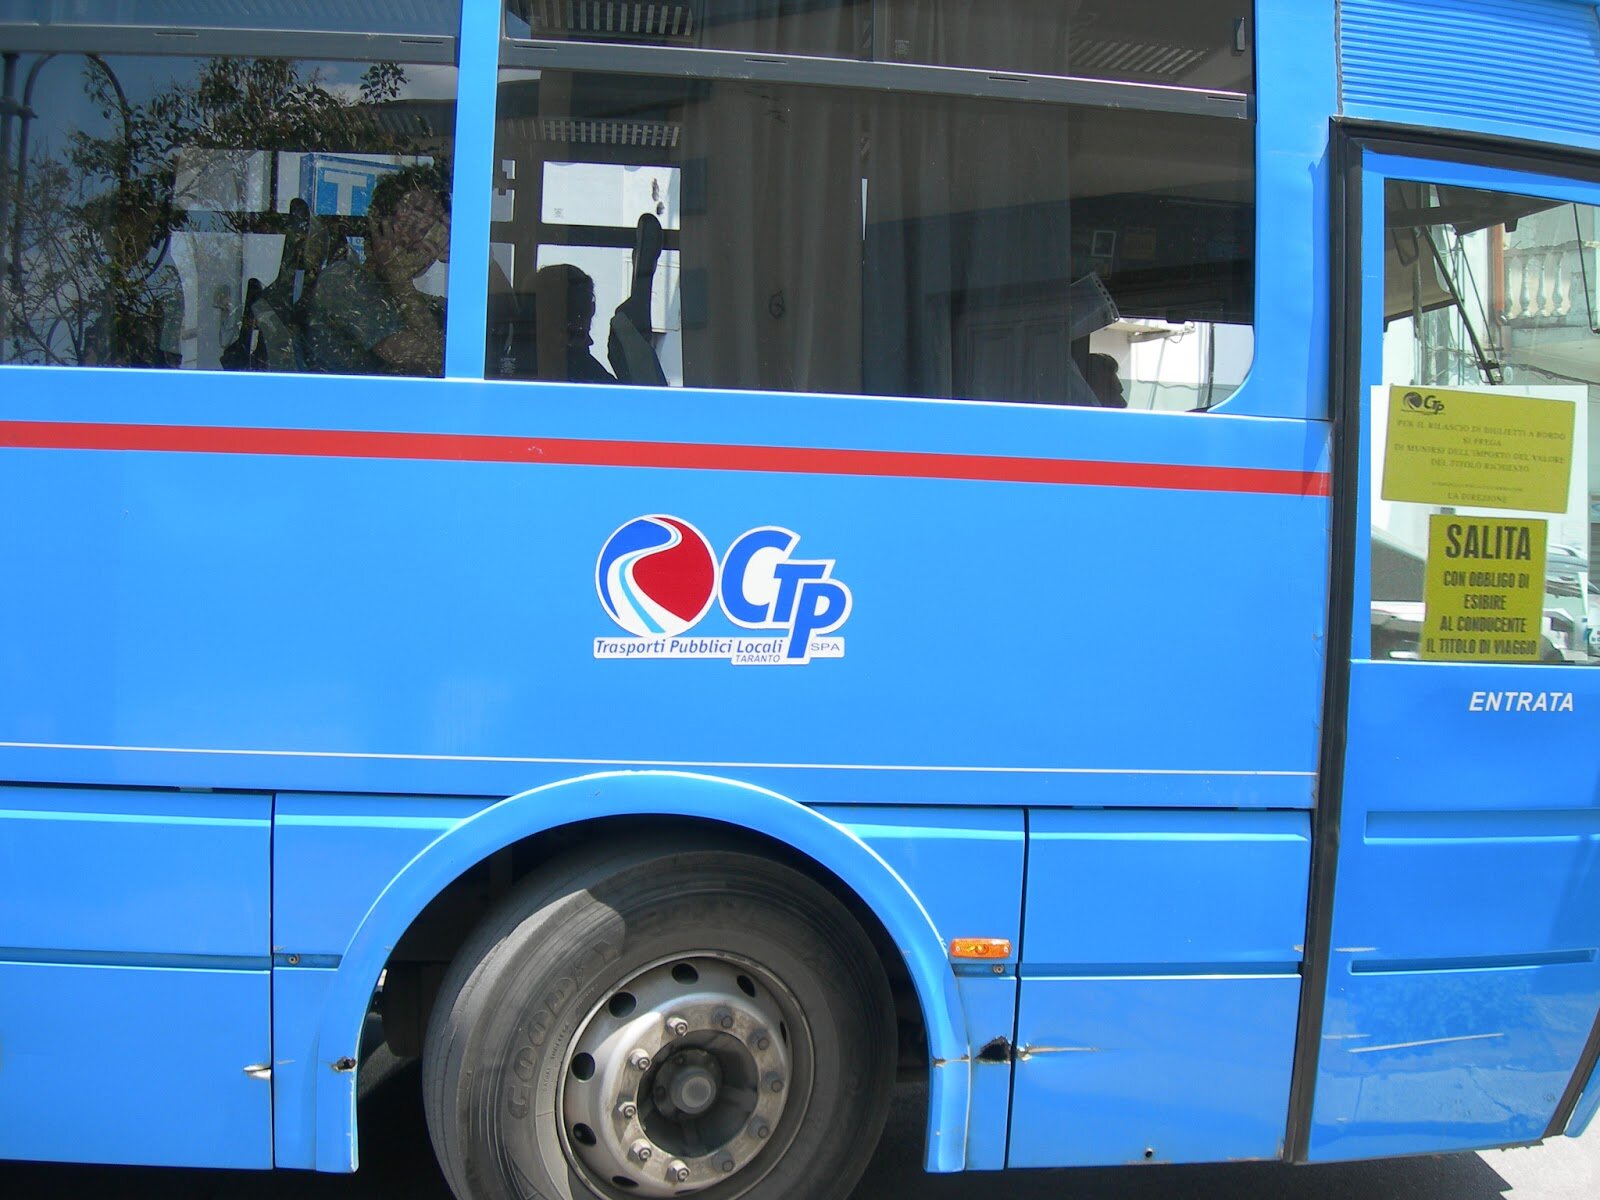 Napoli, crisi Ctp: gli stipendi saranno pagati ma i bus rischiano di fermarsi perché manca il carburante